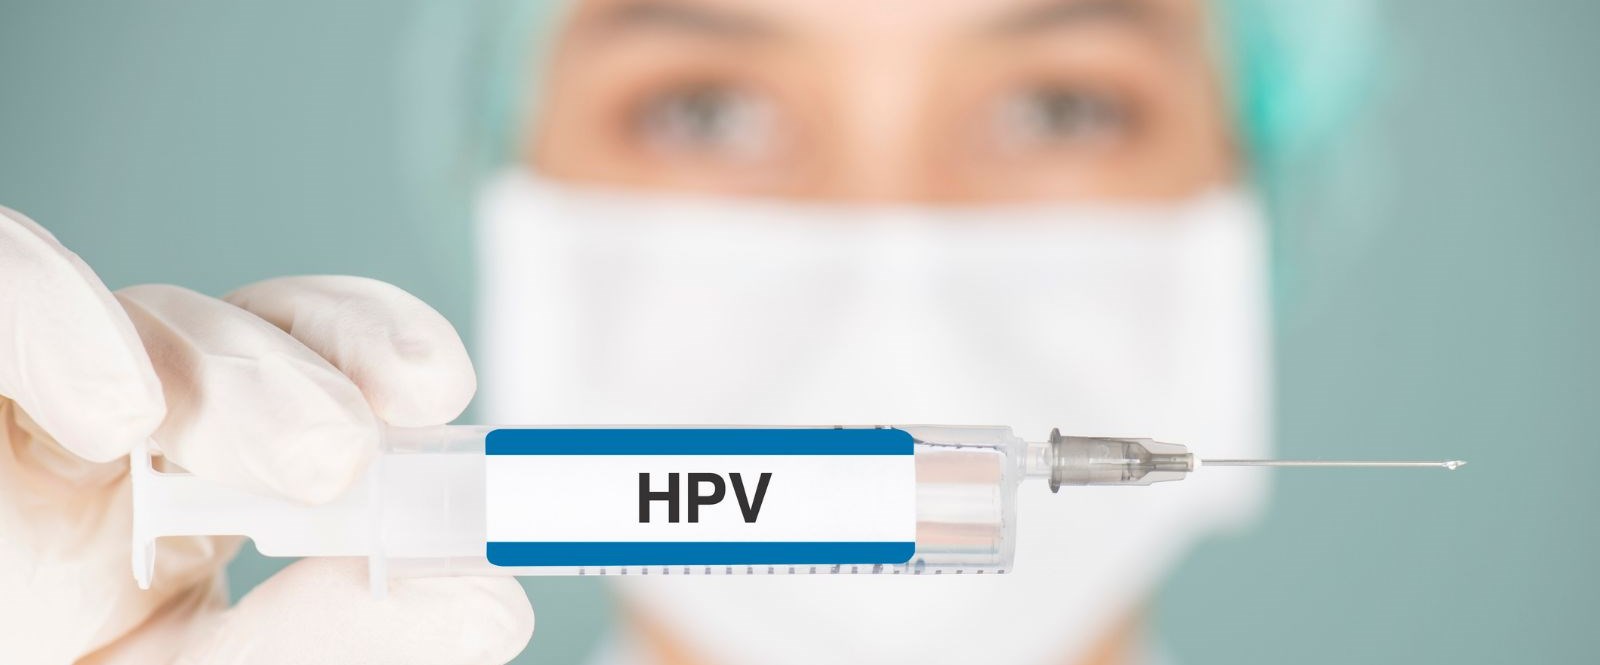 Rahim Ağzı Kanseri (HPV Aşısı)